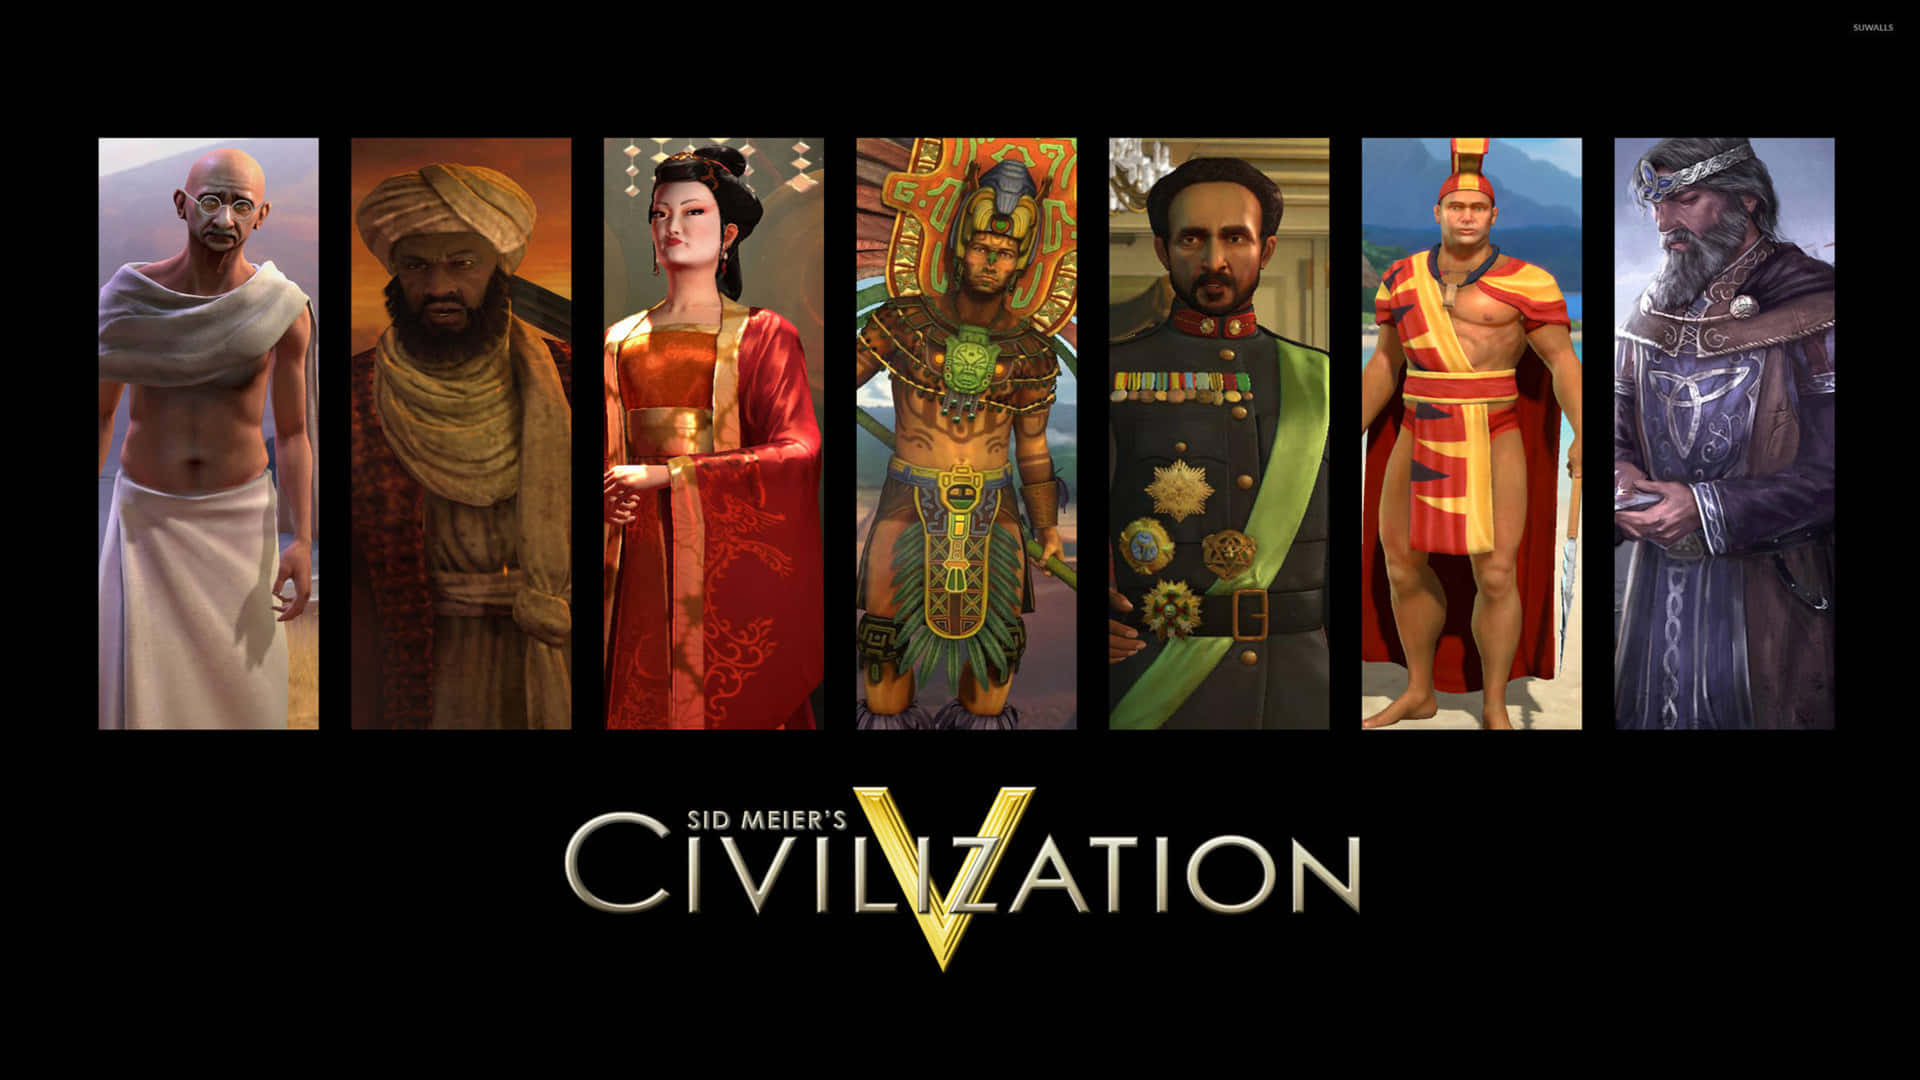 Civilizationv - En Grupp Människor I Kostymer.